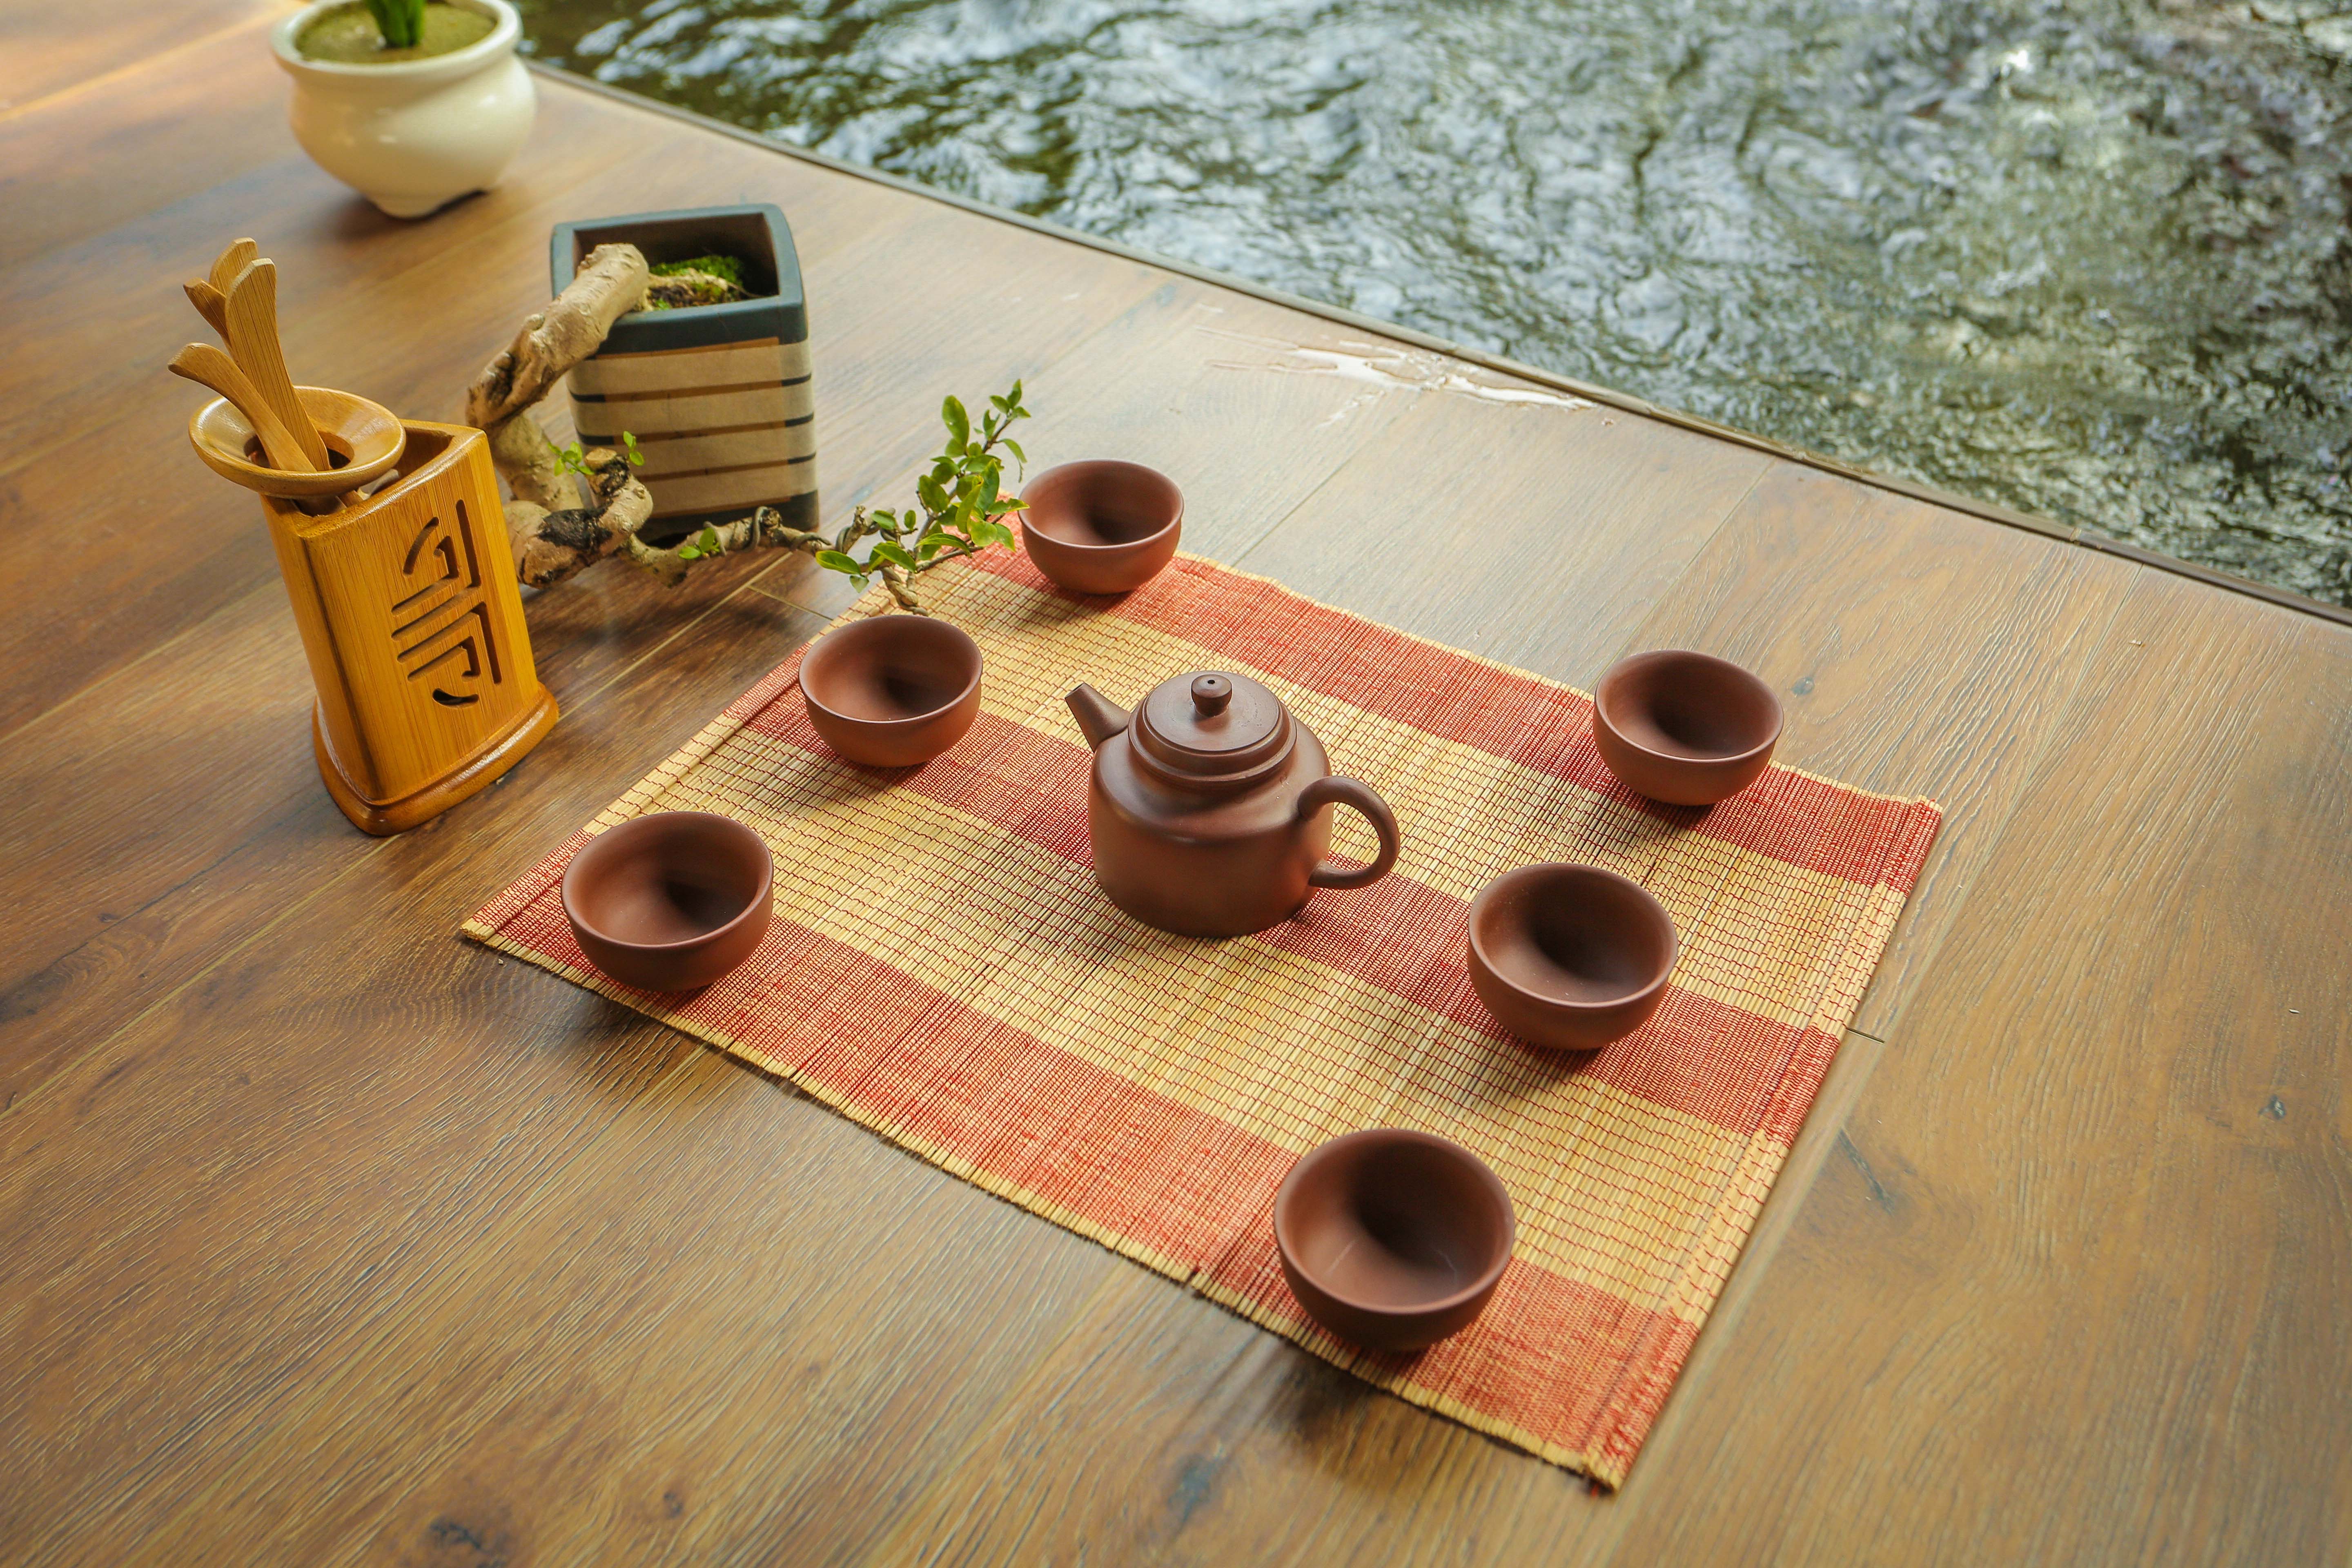 Bộ ấm gốm sứ - Bộ trà đất nung - Bộ ấm trà An Thổ Túc - Bộ ấm trà Nồi Đất